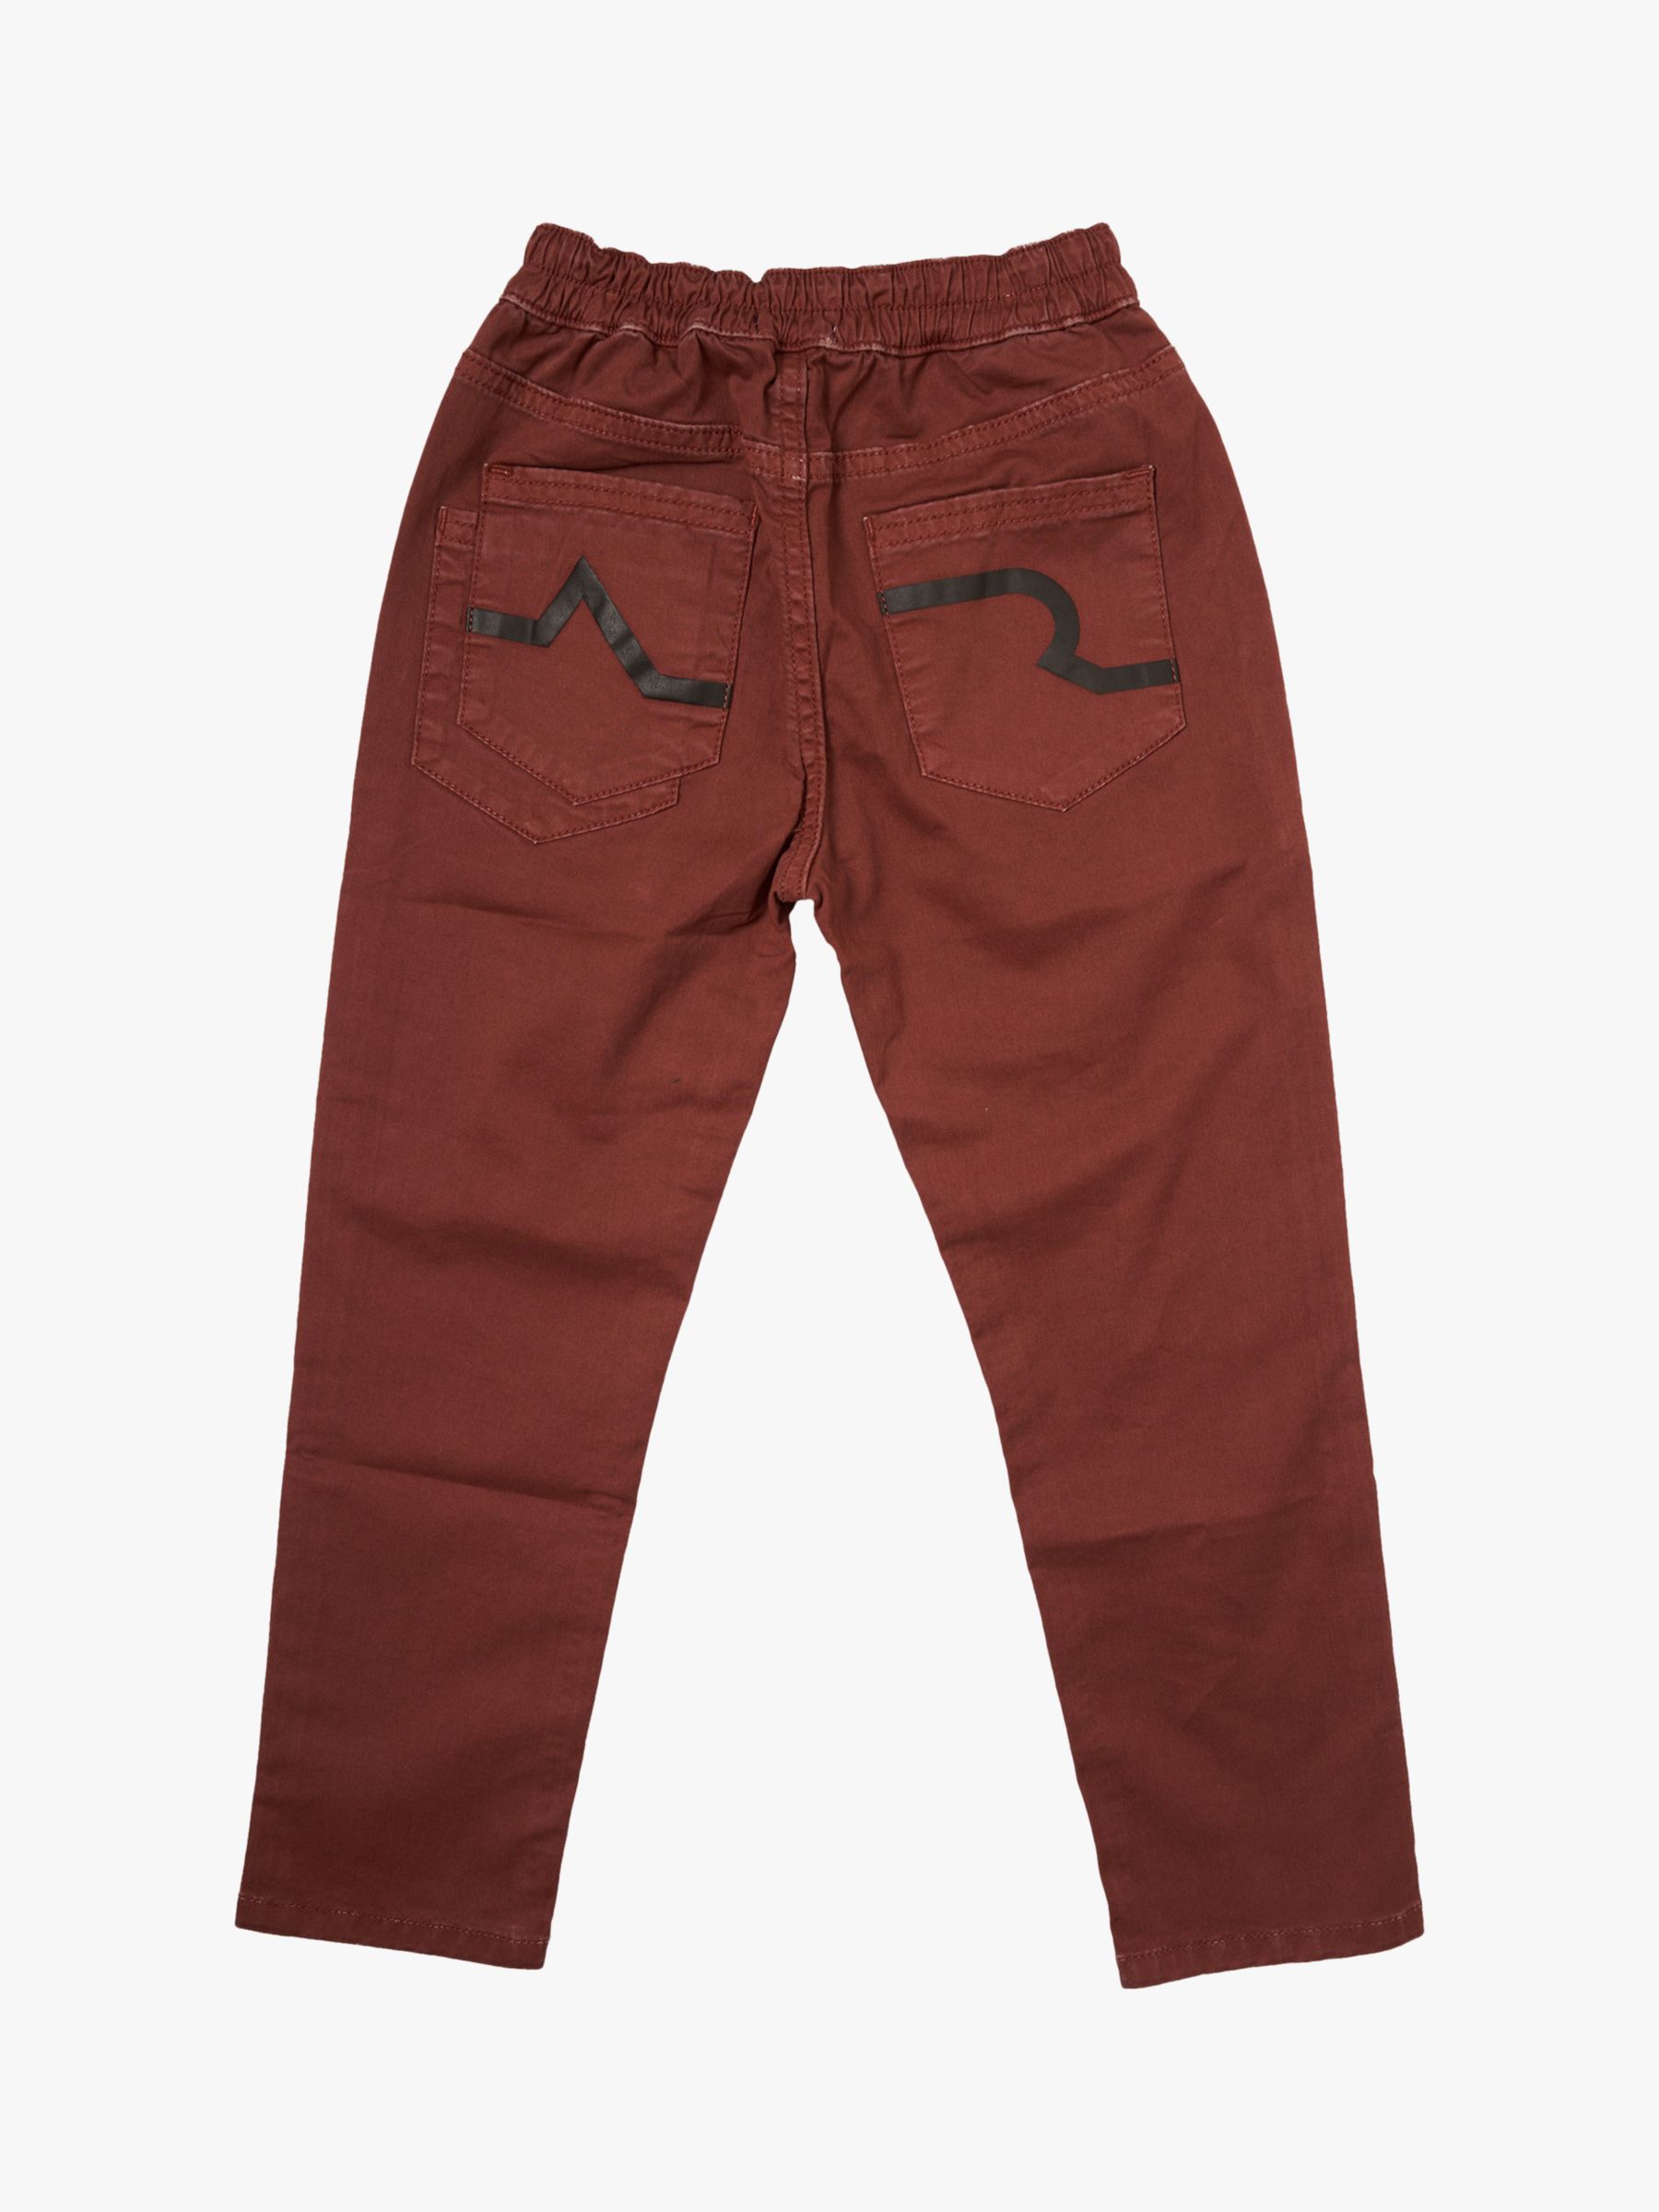 Buy Angel & Rocket Kids' Kyron Washed Jeans, Tan Online at johnlewis.com